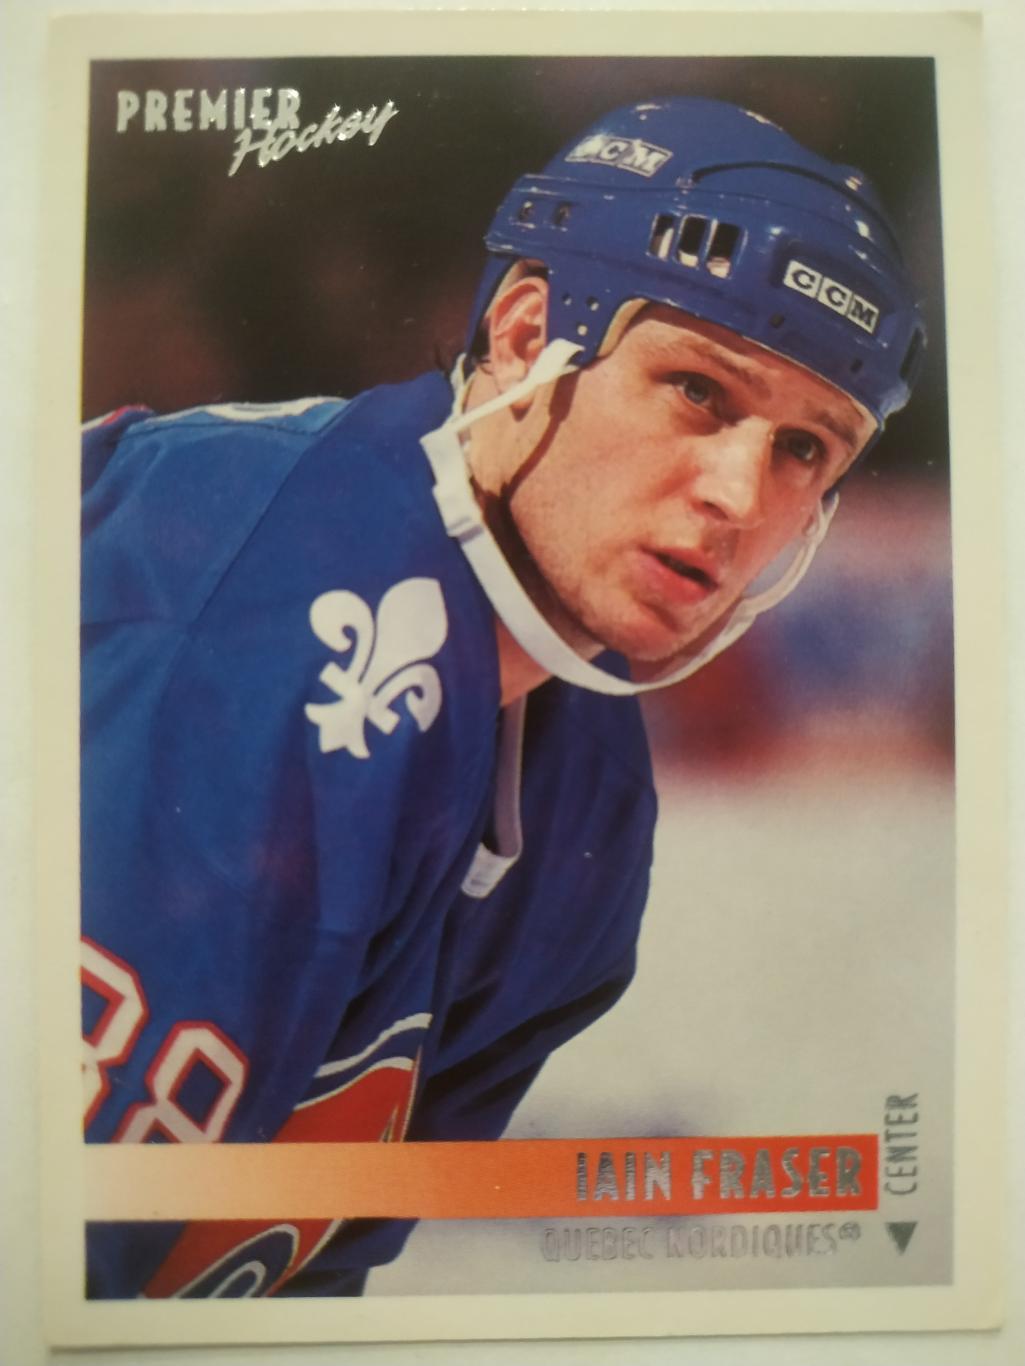 ХОККЕЙ КАРТОЧКА НХЛ TOPPS PREMIER HOCKEY 1994-95 NHL IAIN FRASER NORDIQUES #7